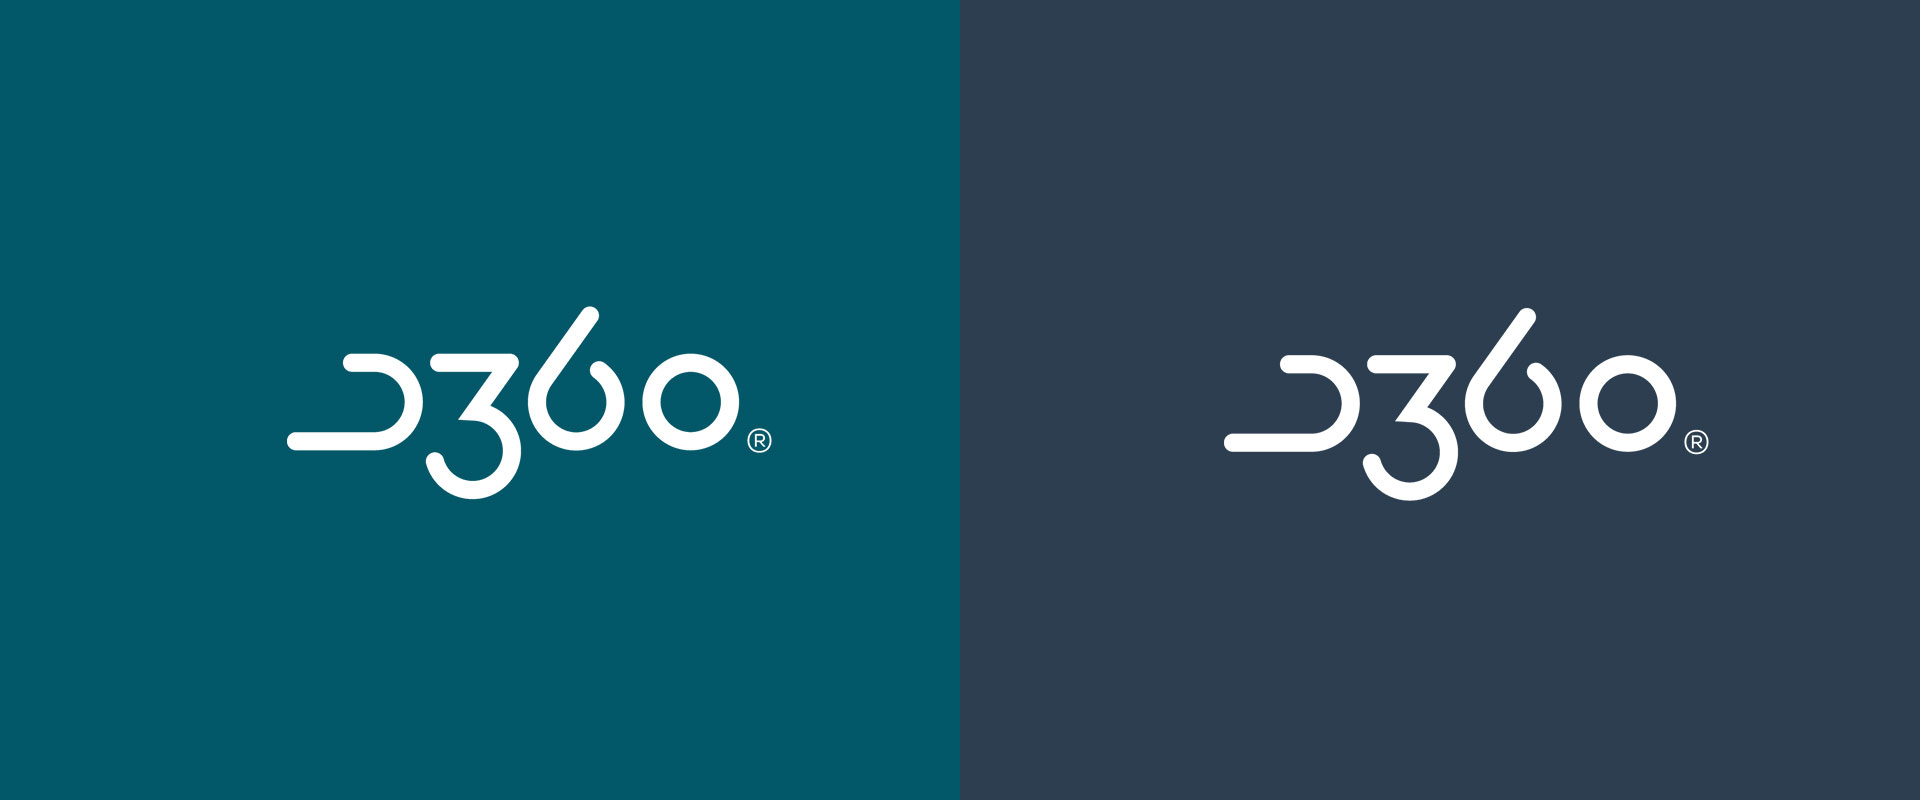 500 минус 360. Логотип 360 градусов. VR 360 logo. Телеканал 360 логотип. ТК 360.